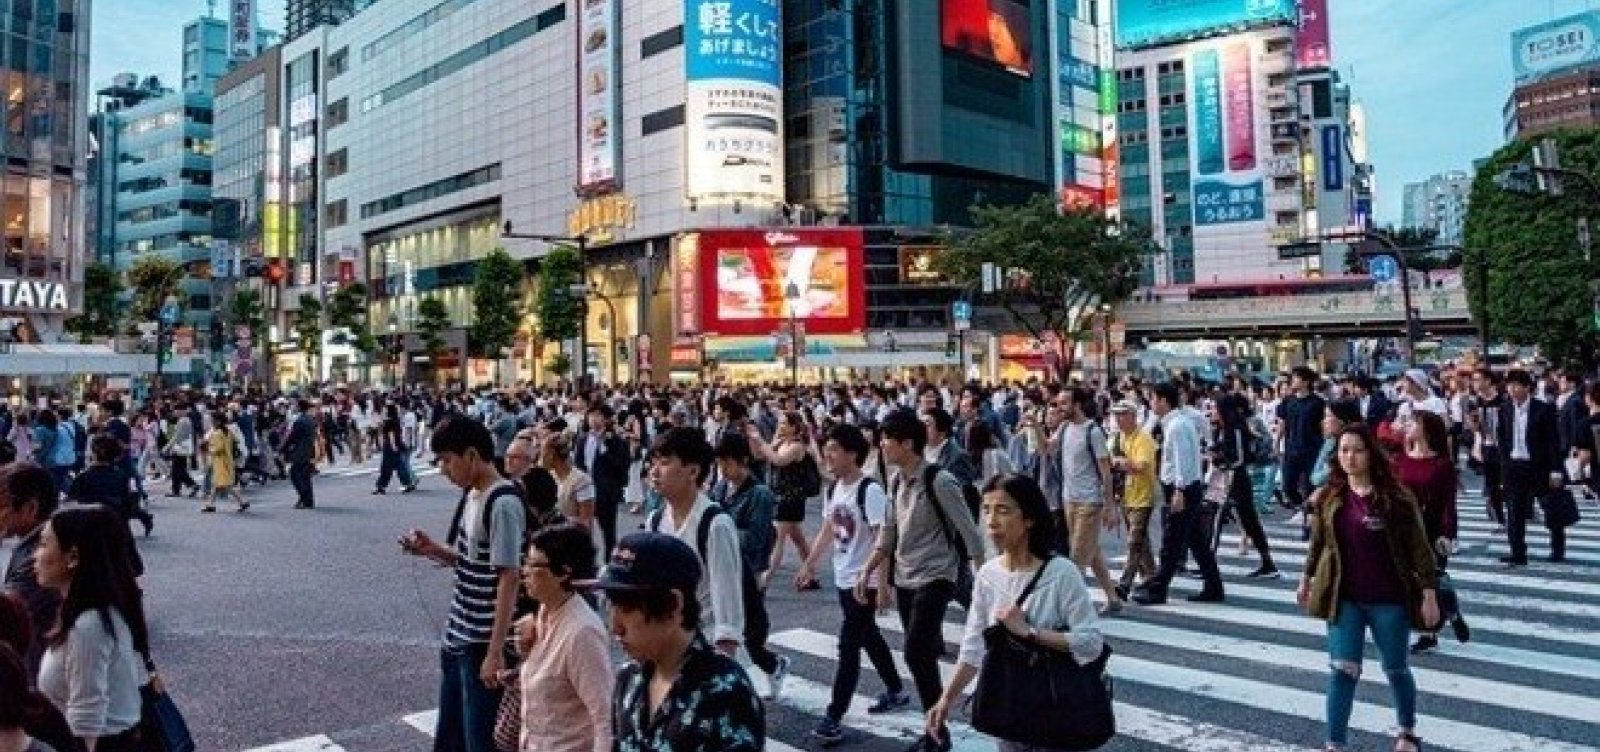 População do Japão encolhe em 500 mil em um ano